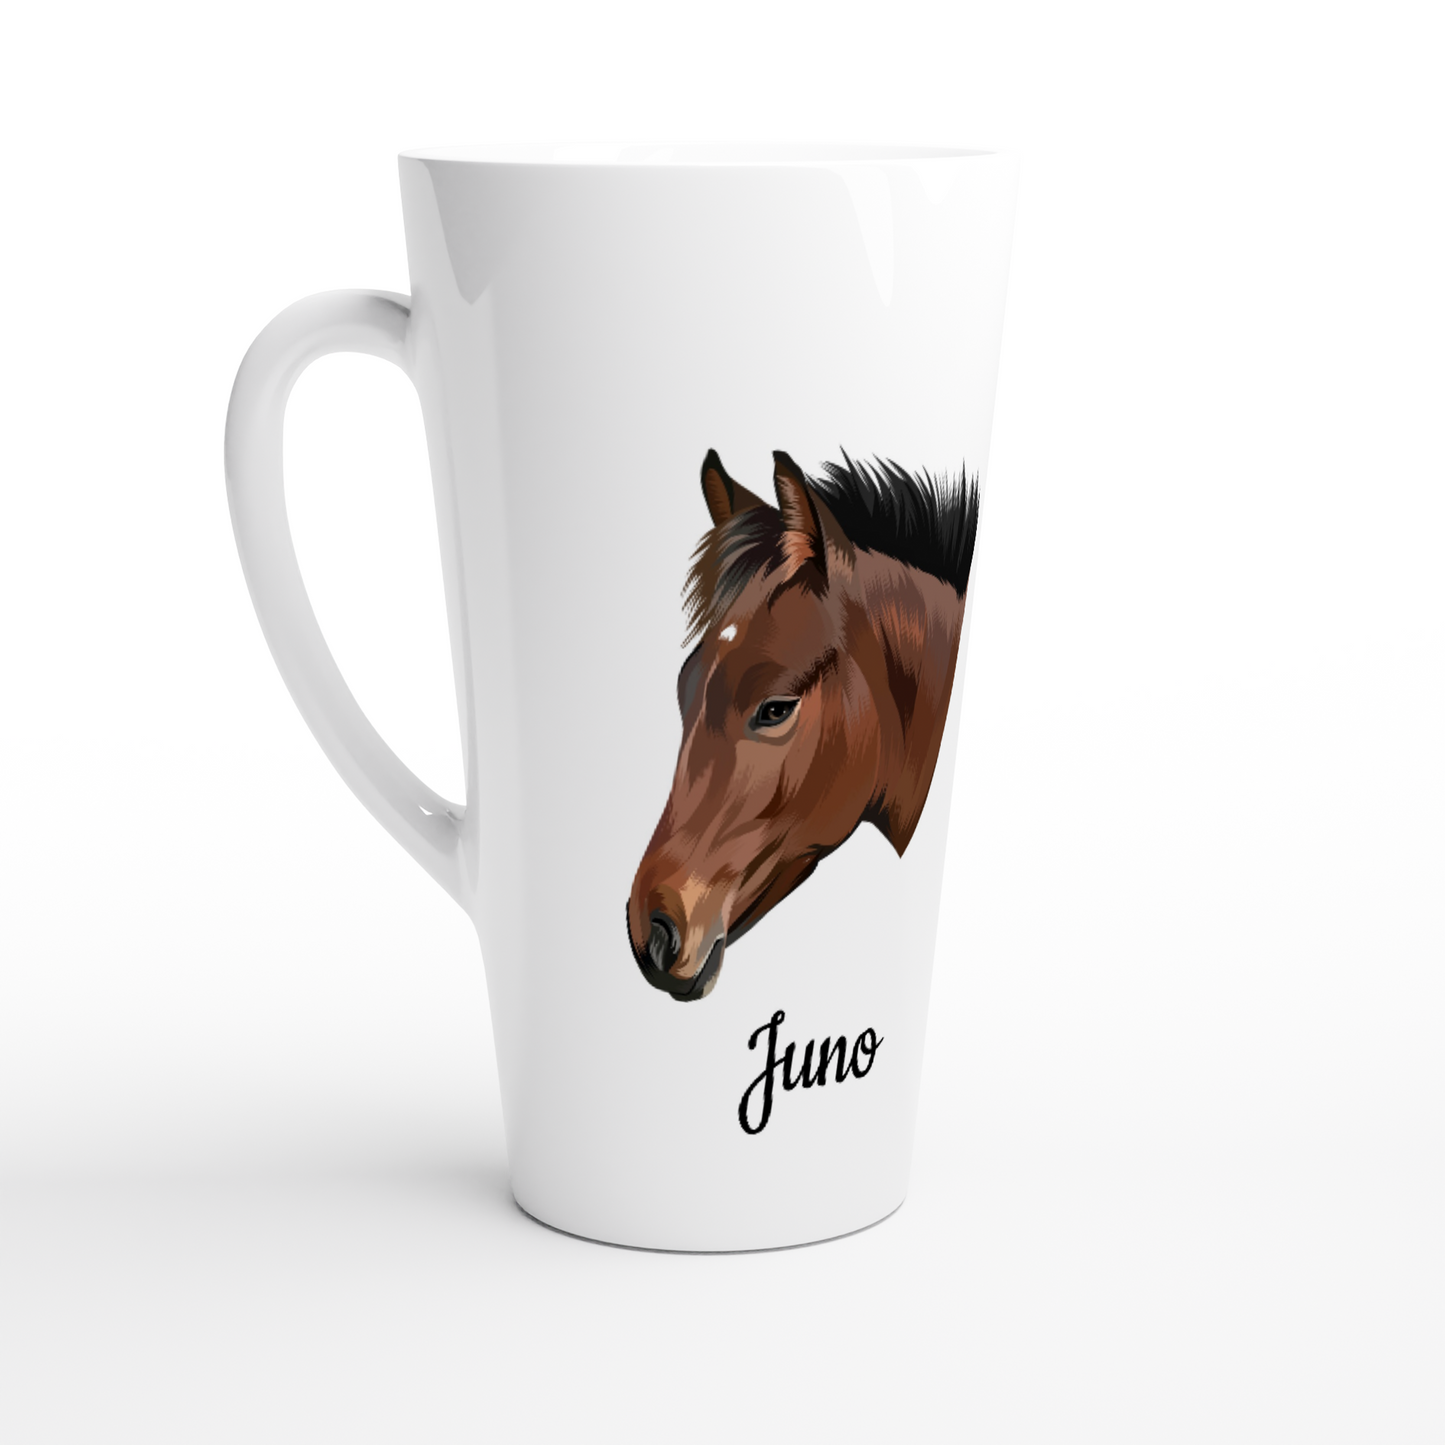 Hand Drawn Horse || Latte 17oz Ceramic Mug  TruPaint  Hand Drawn & Personalized; Hand drawn & personalized with your horse